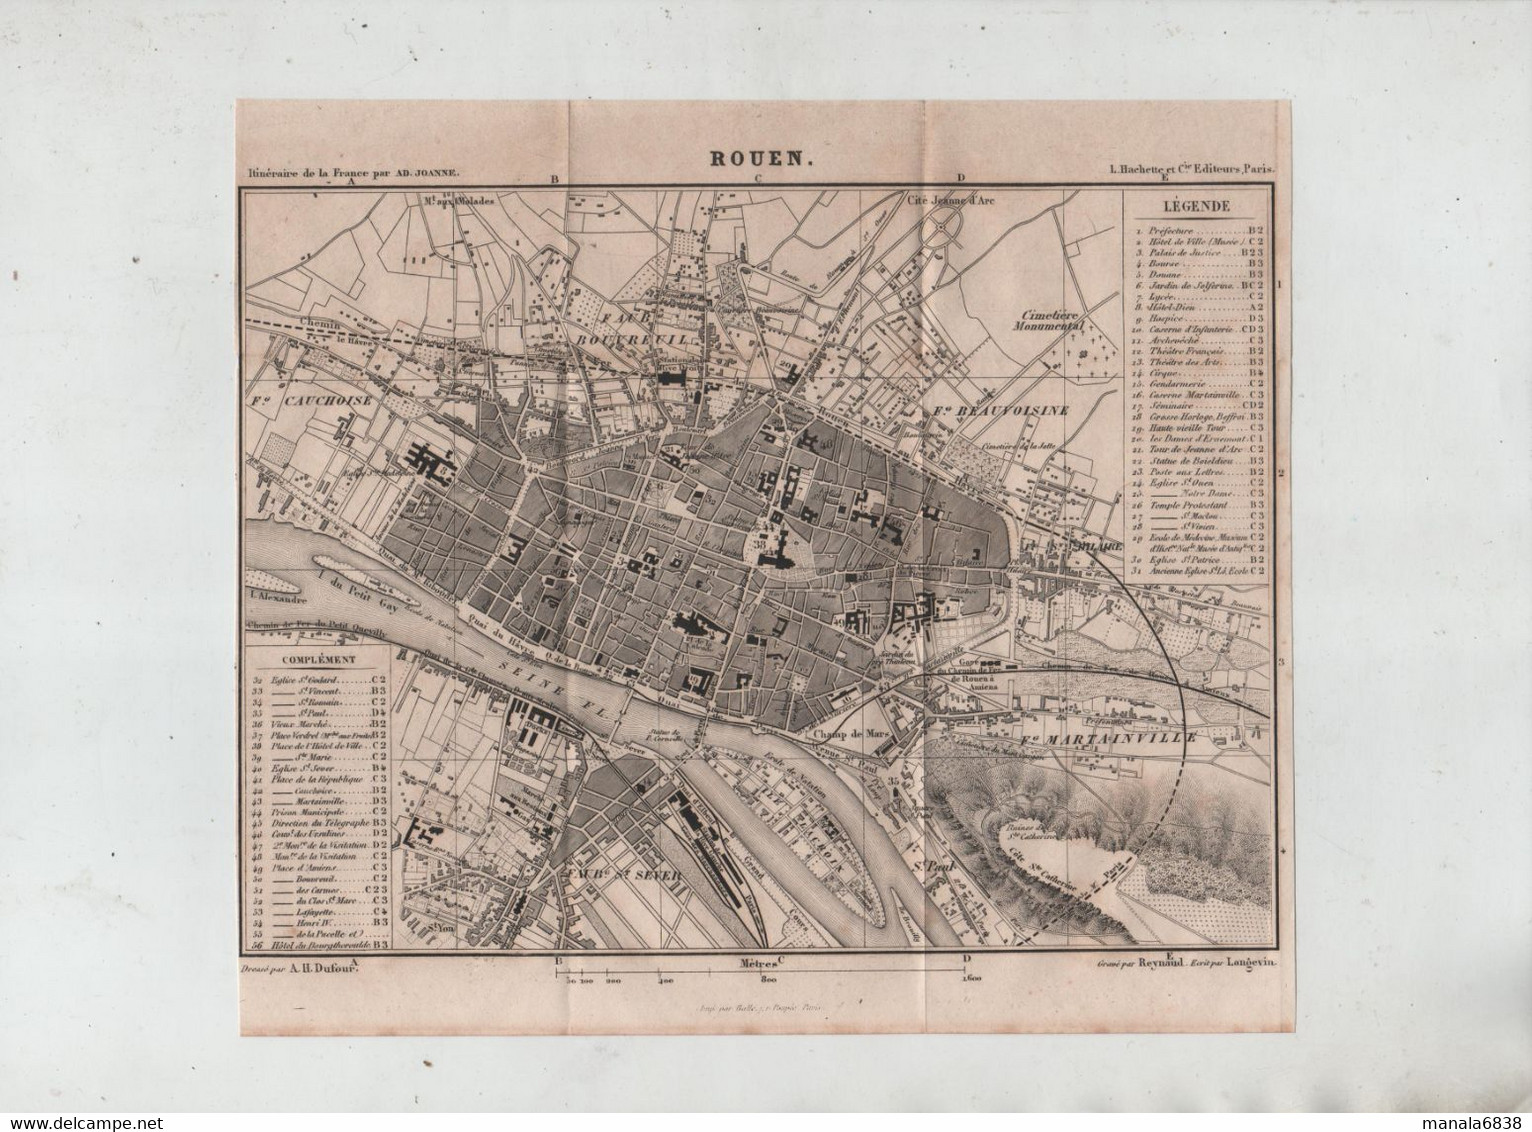 Rouen En 1877 Dufour Gare Voie Ferrée Faubourg Martainville Beauvoisine Bouvreuil Cauchoise Saint Sever Reynaud - Andere Pläne